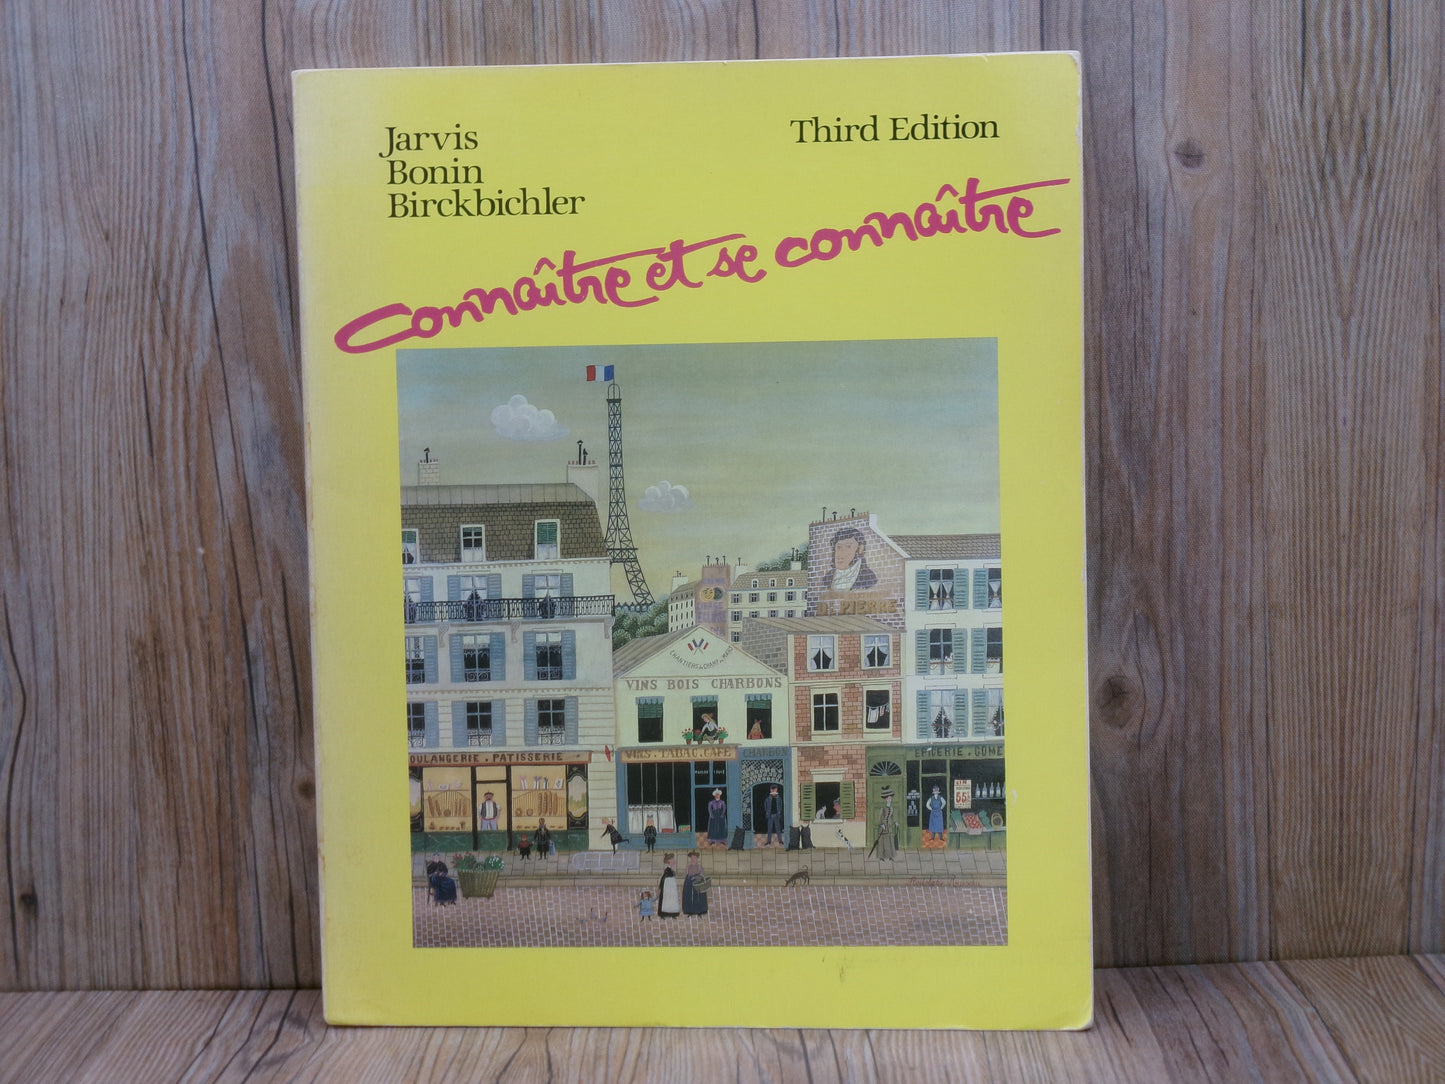 Connaitre Et Se Connaitre by Jarvis, Bonin and Birckbichler